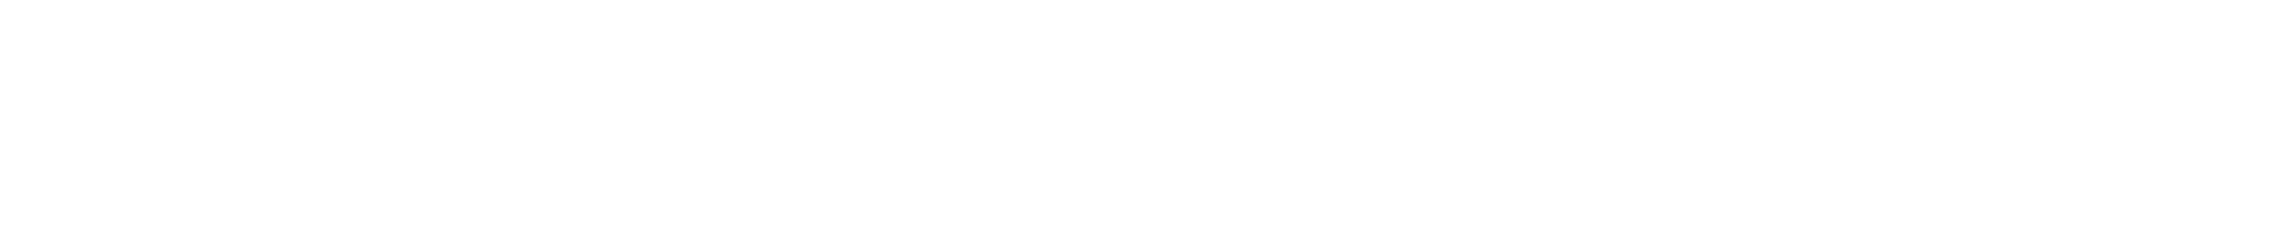 Kölner Rosenmontagszeitung 2021 Anzeigen-Sonderveröffentlichung von Kölner Stadt-Anzeiger und Kölnischer Rundschau